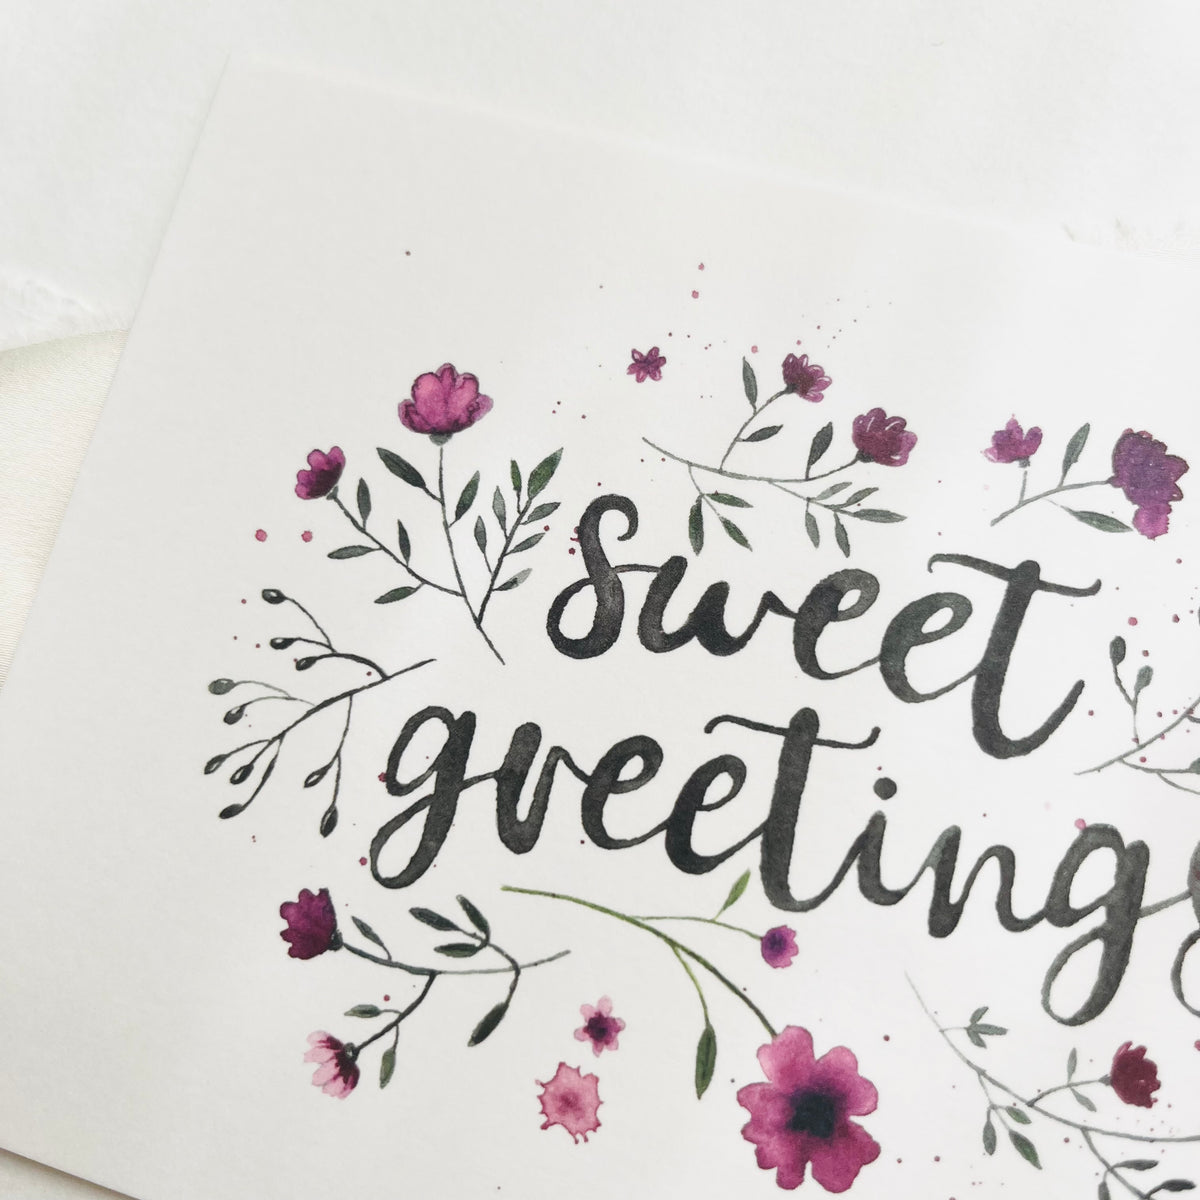 Postkarte - Sweet Greetings